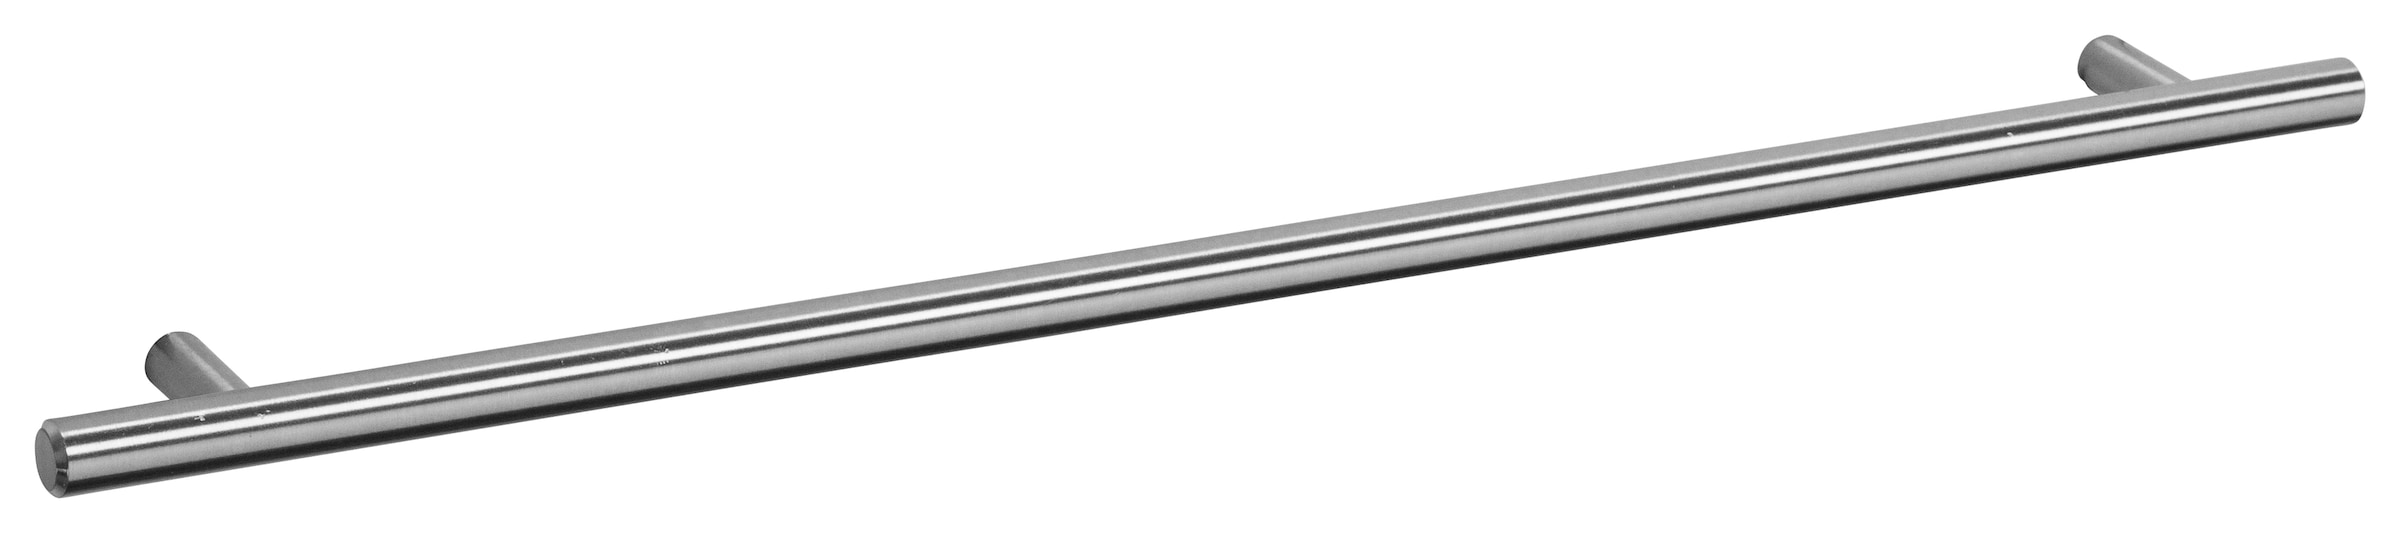 OPTIFIT Hängeschrank »Bern«, Breite 50 cm, 70 cm hoch, mit 1 Tür, mit  Metallgriff online kaufen